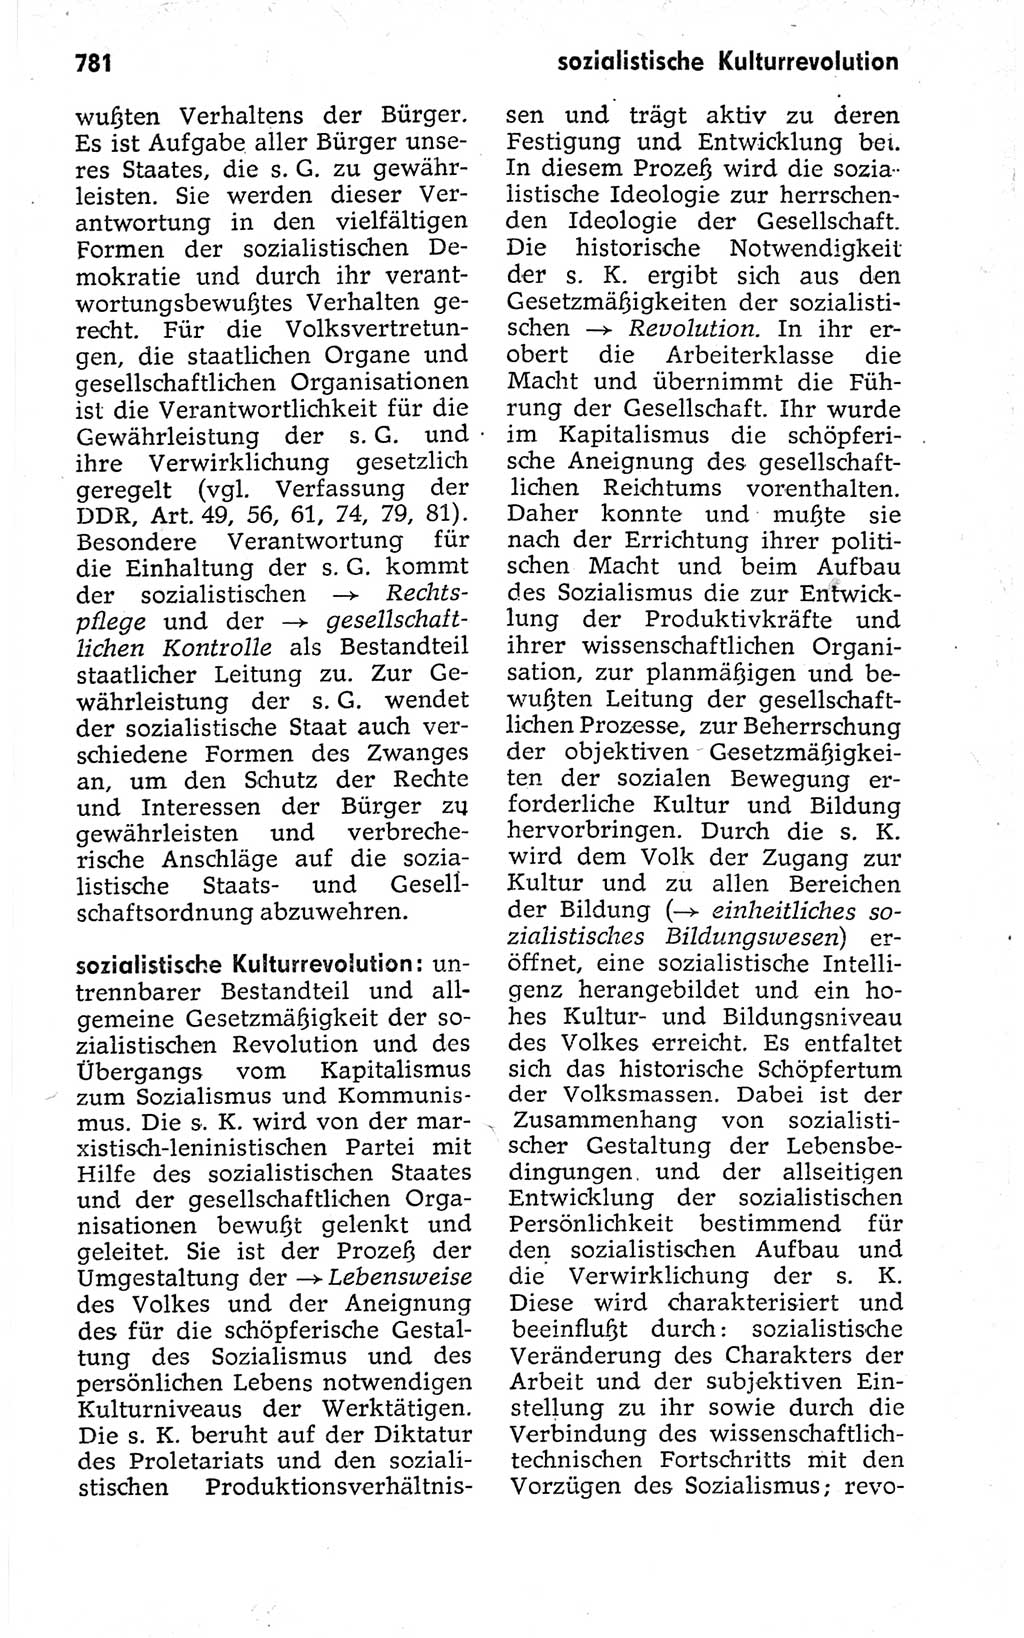 Kleines politisches Wörterbuch [Deutsche Demokratische Republik (DDR)] 1973, Seite 781 (Kl. pol. Wb. DDR 1973, S. 781)